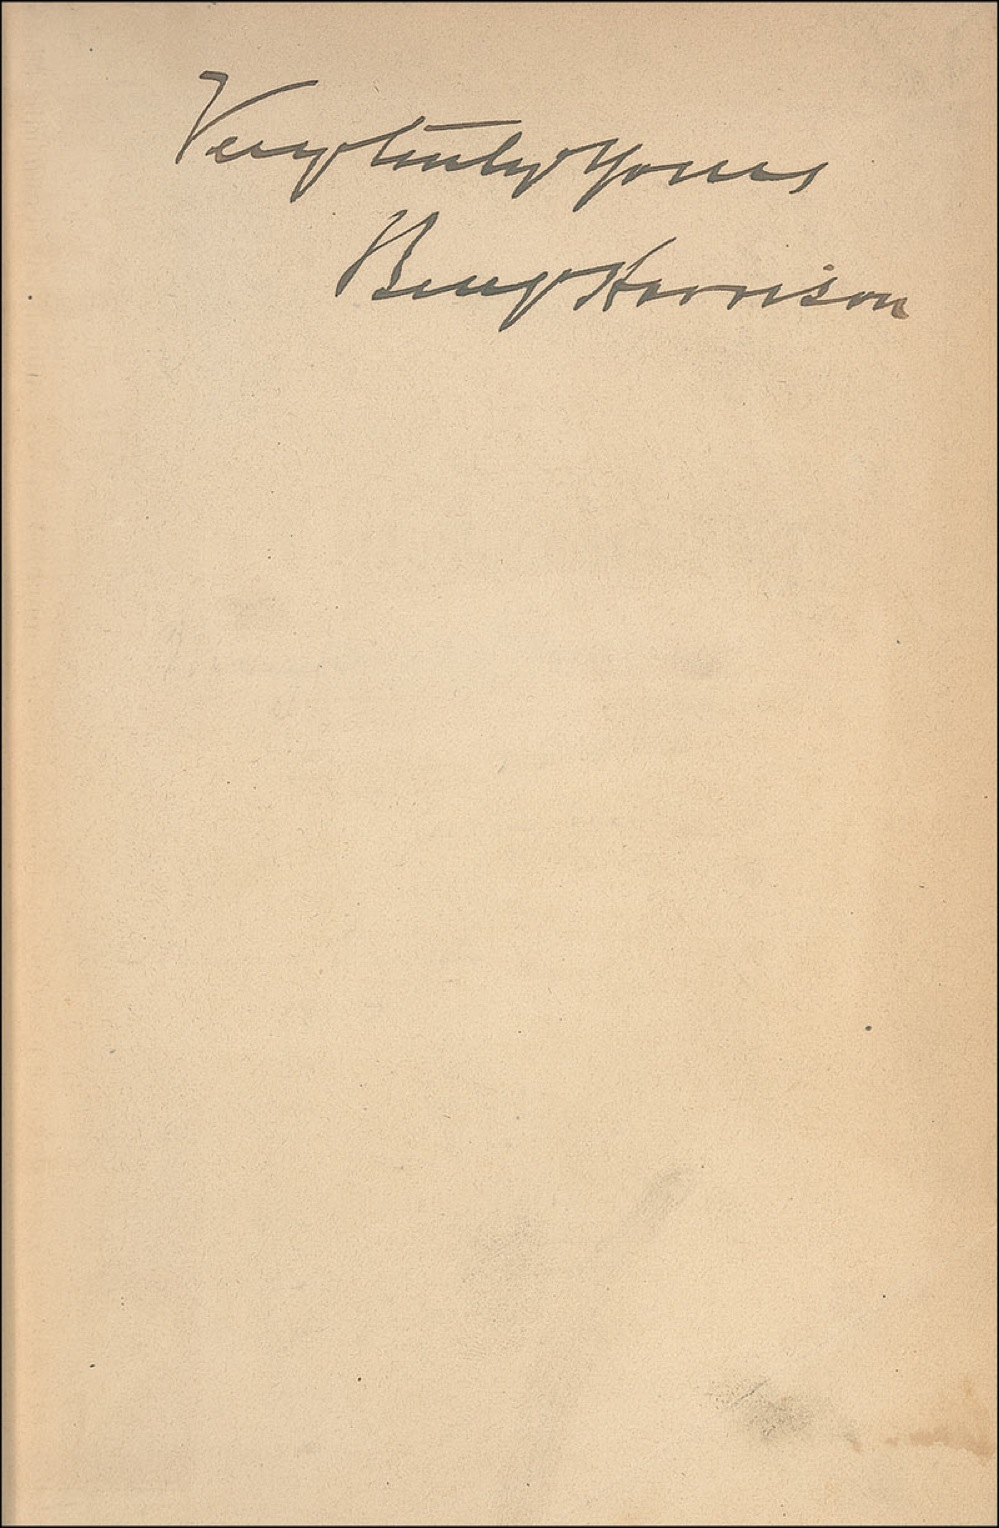 Lot #67 Benjamin Harrison